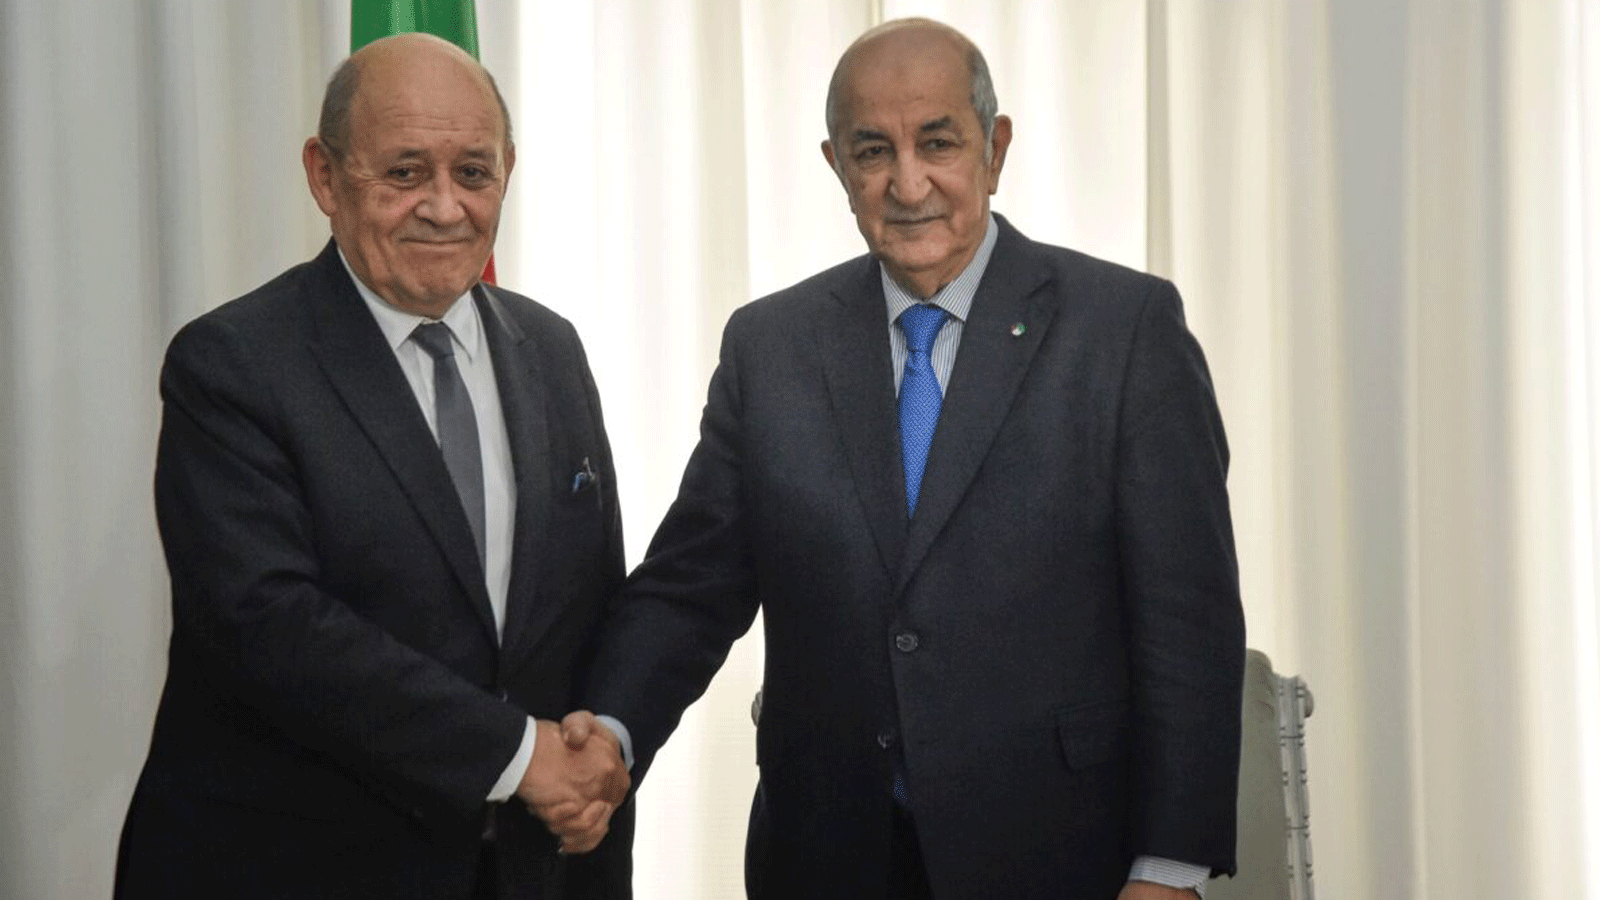 الرئيس الجزائري عبد المجيد تبون (يمين) يلتقي بوزير الخارجية الفرنسي الزائر جان إيف لودريان في العاصمة الجزائر يوم 21 كانون الثاني/يناير 2020 